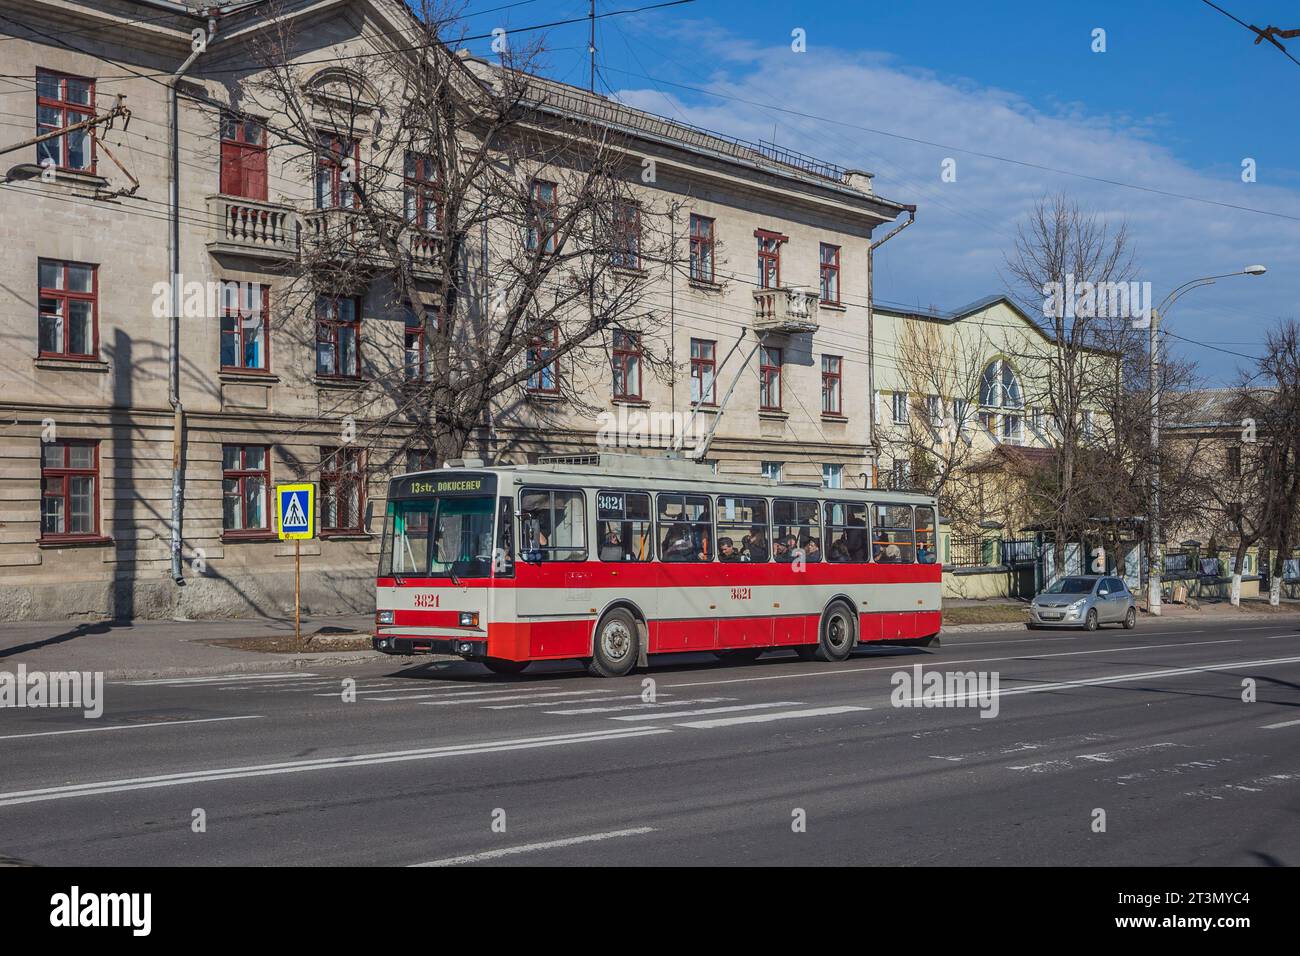 17.02.2020. Moldova, Chisinau. Trolleybus Skoda 14tr. Stock Photo